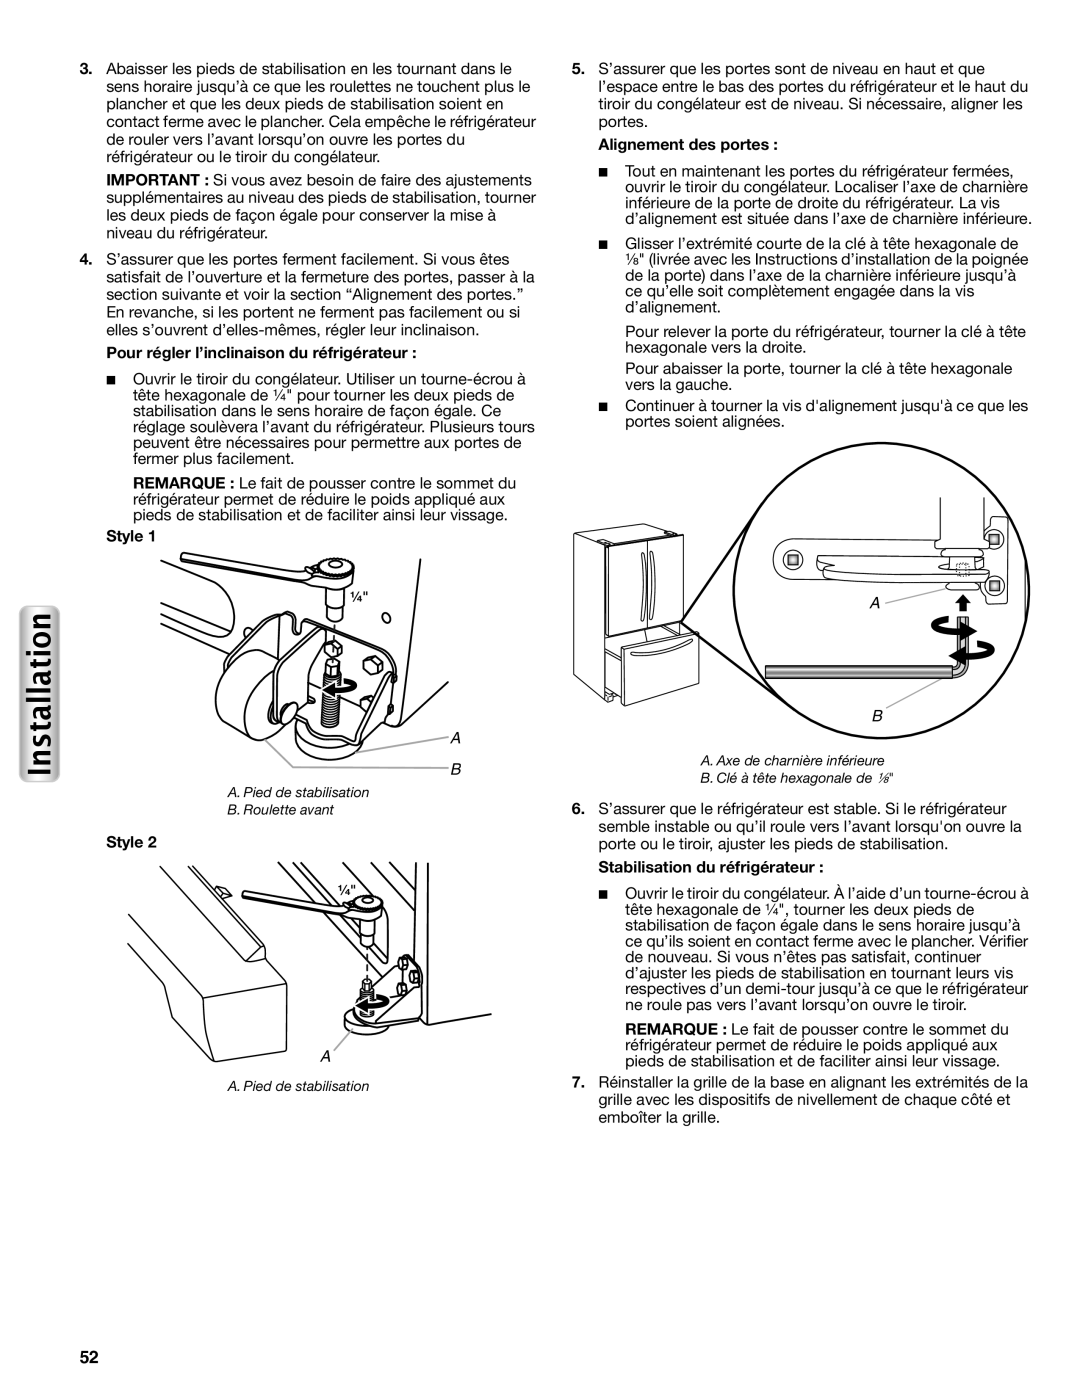 Maytag W10558103A manual Pour régler l’inclinaison du réfrigérateur, Alignement des portes, Stabilisation du réfrigérateur 